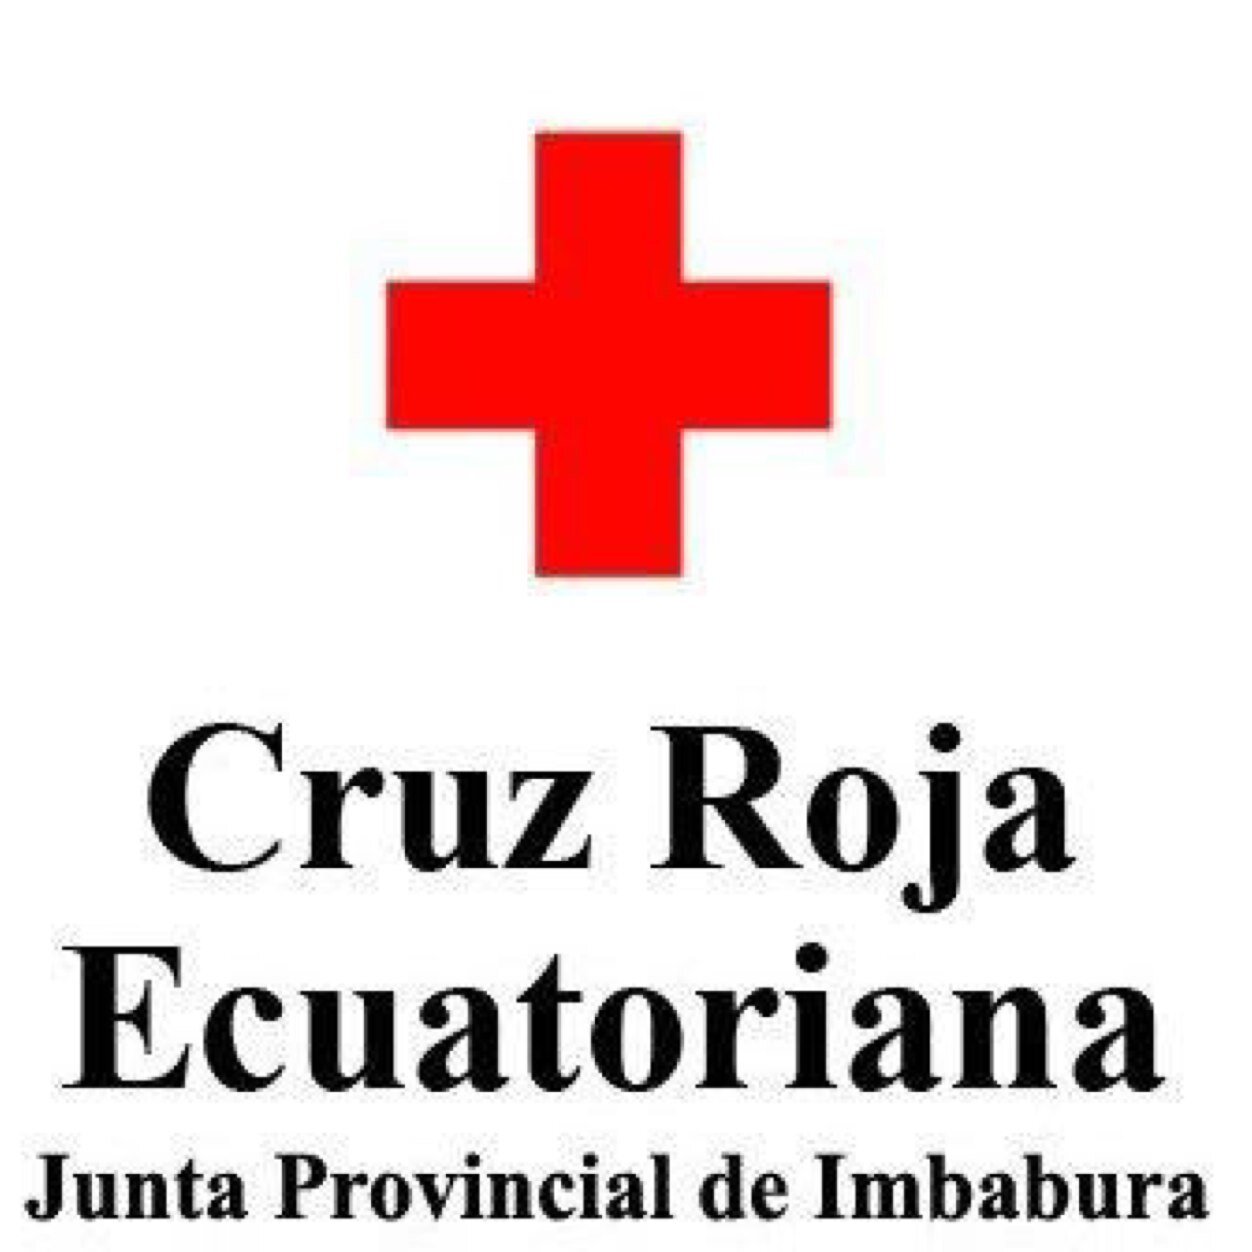 Cuenta Oficial de la Cruz Roja Ecuatoriana Junta Provincial de Imbabura. Salvar vidas,construir un futuro.